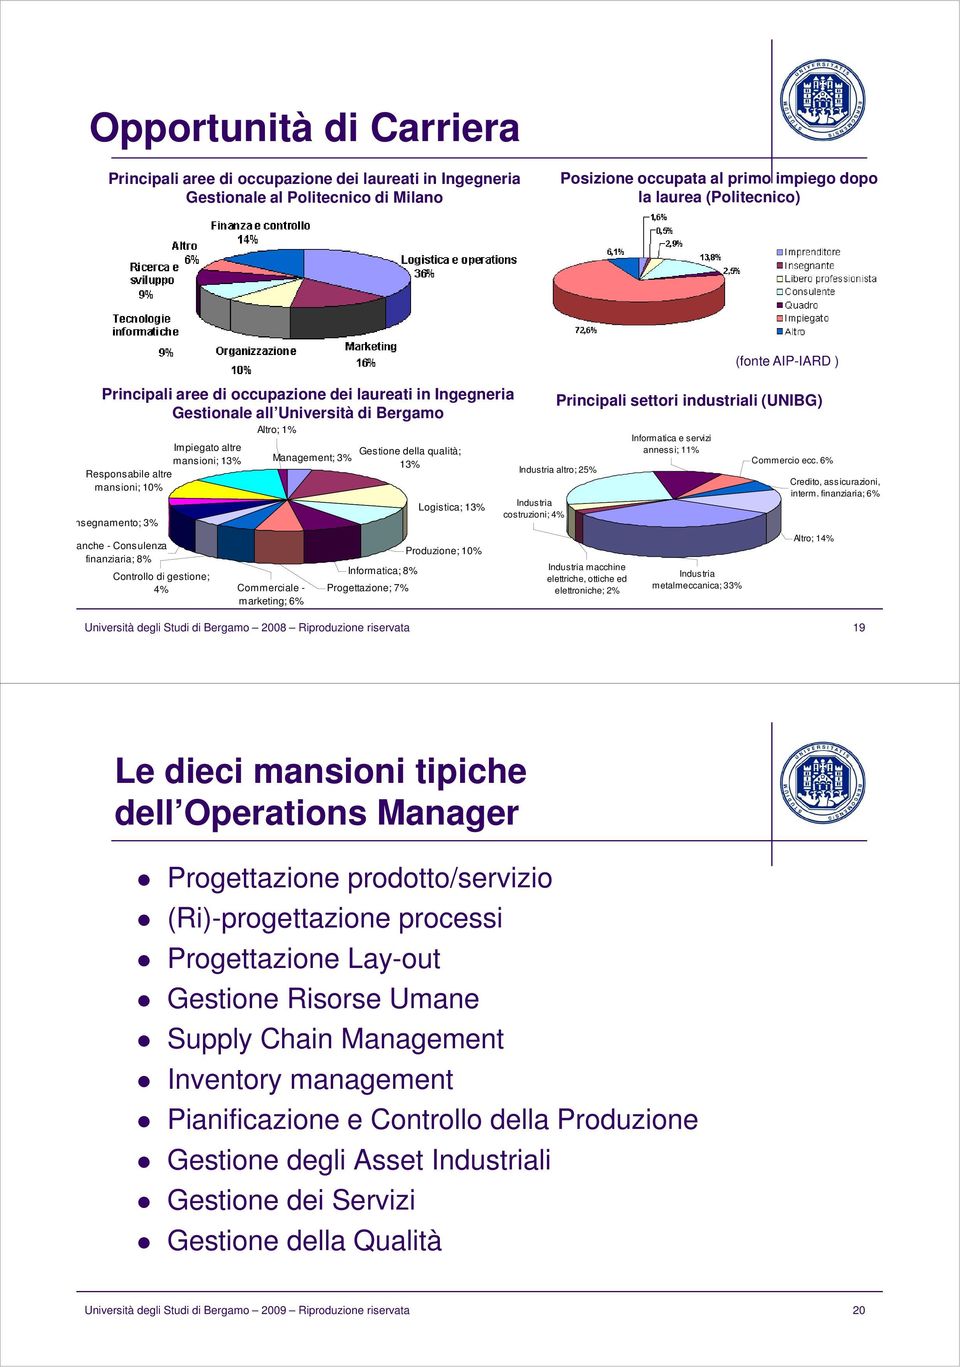 Controllo di gestione; 4% Altro; 1% Commerciale - marketing; 6% Management; 3% Gestione della qualità; 13% Informatica; 8% Progettazione; 7% Logistica; 13% Produzione; 10% (fonte AIP-IARD )